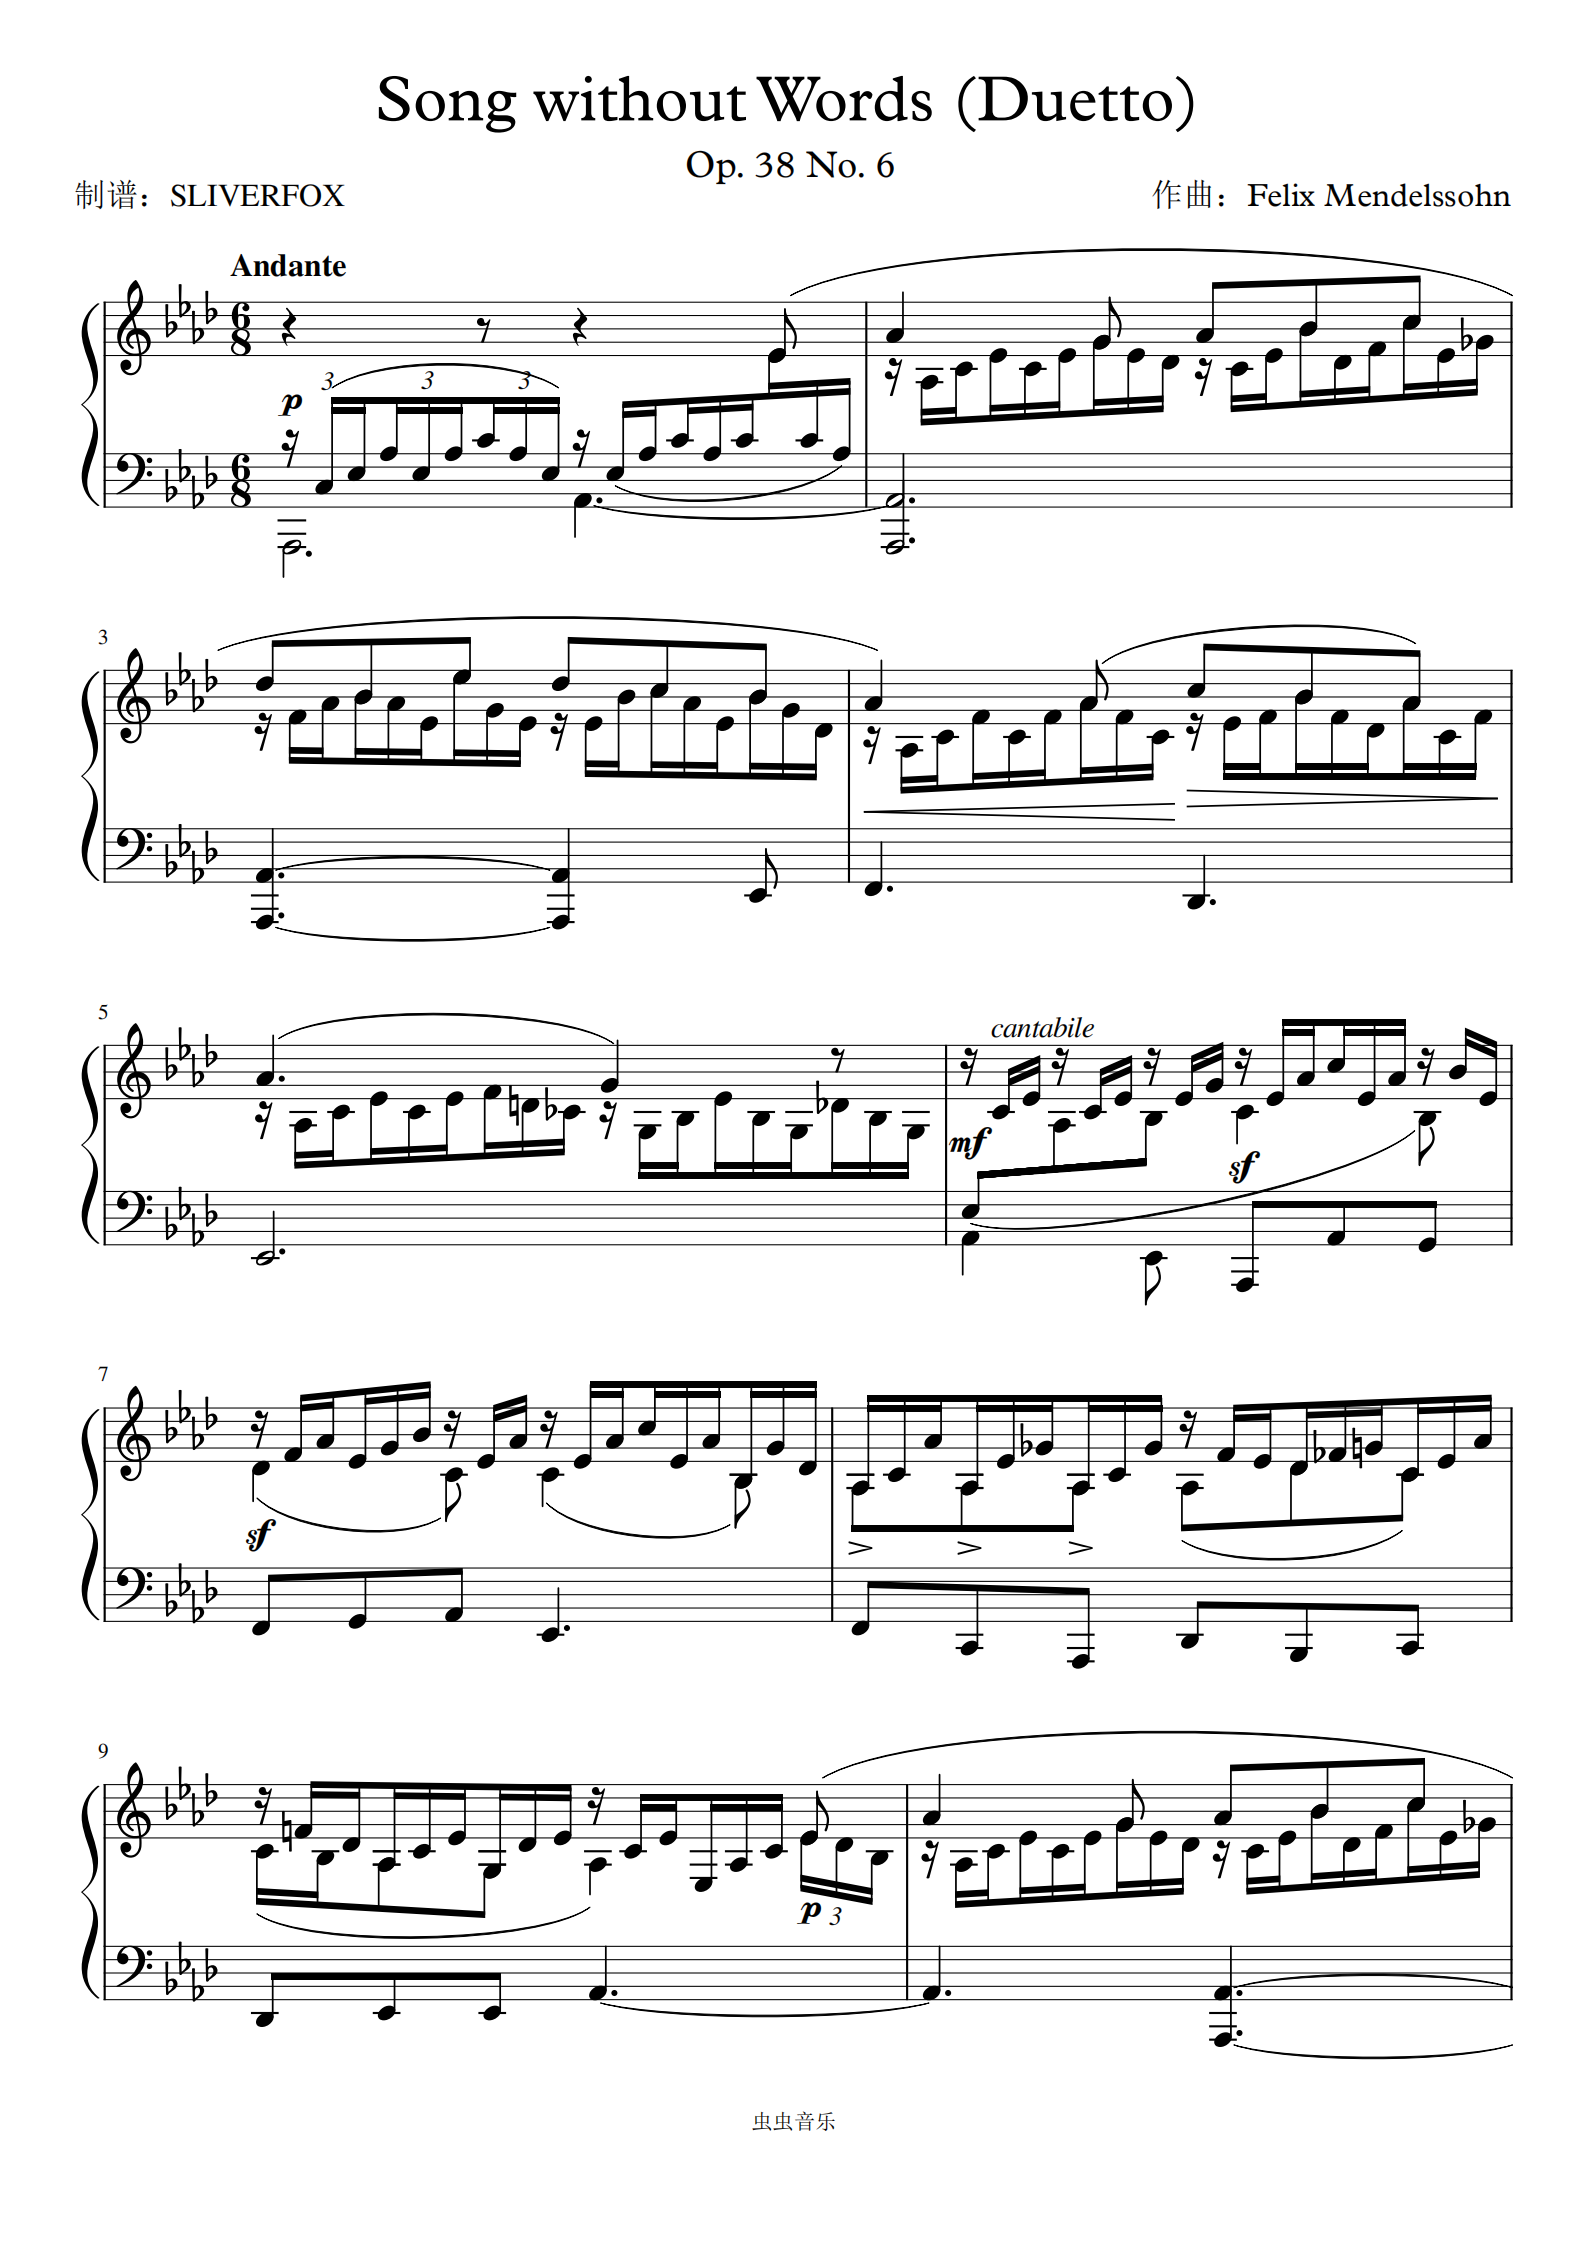 门德尔松无词歌op38 no6钢琴谱